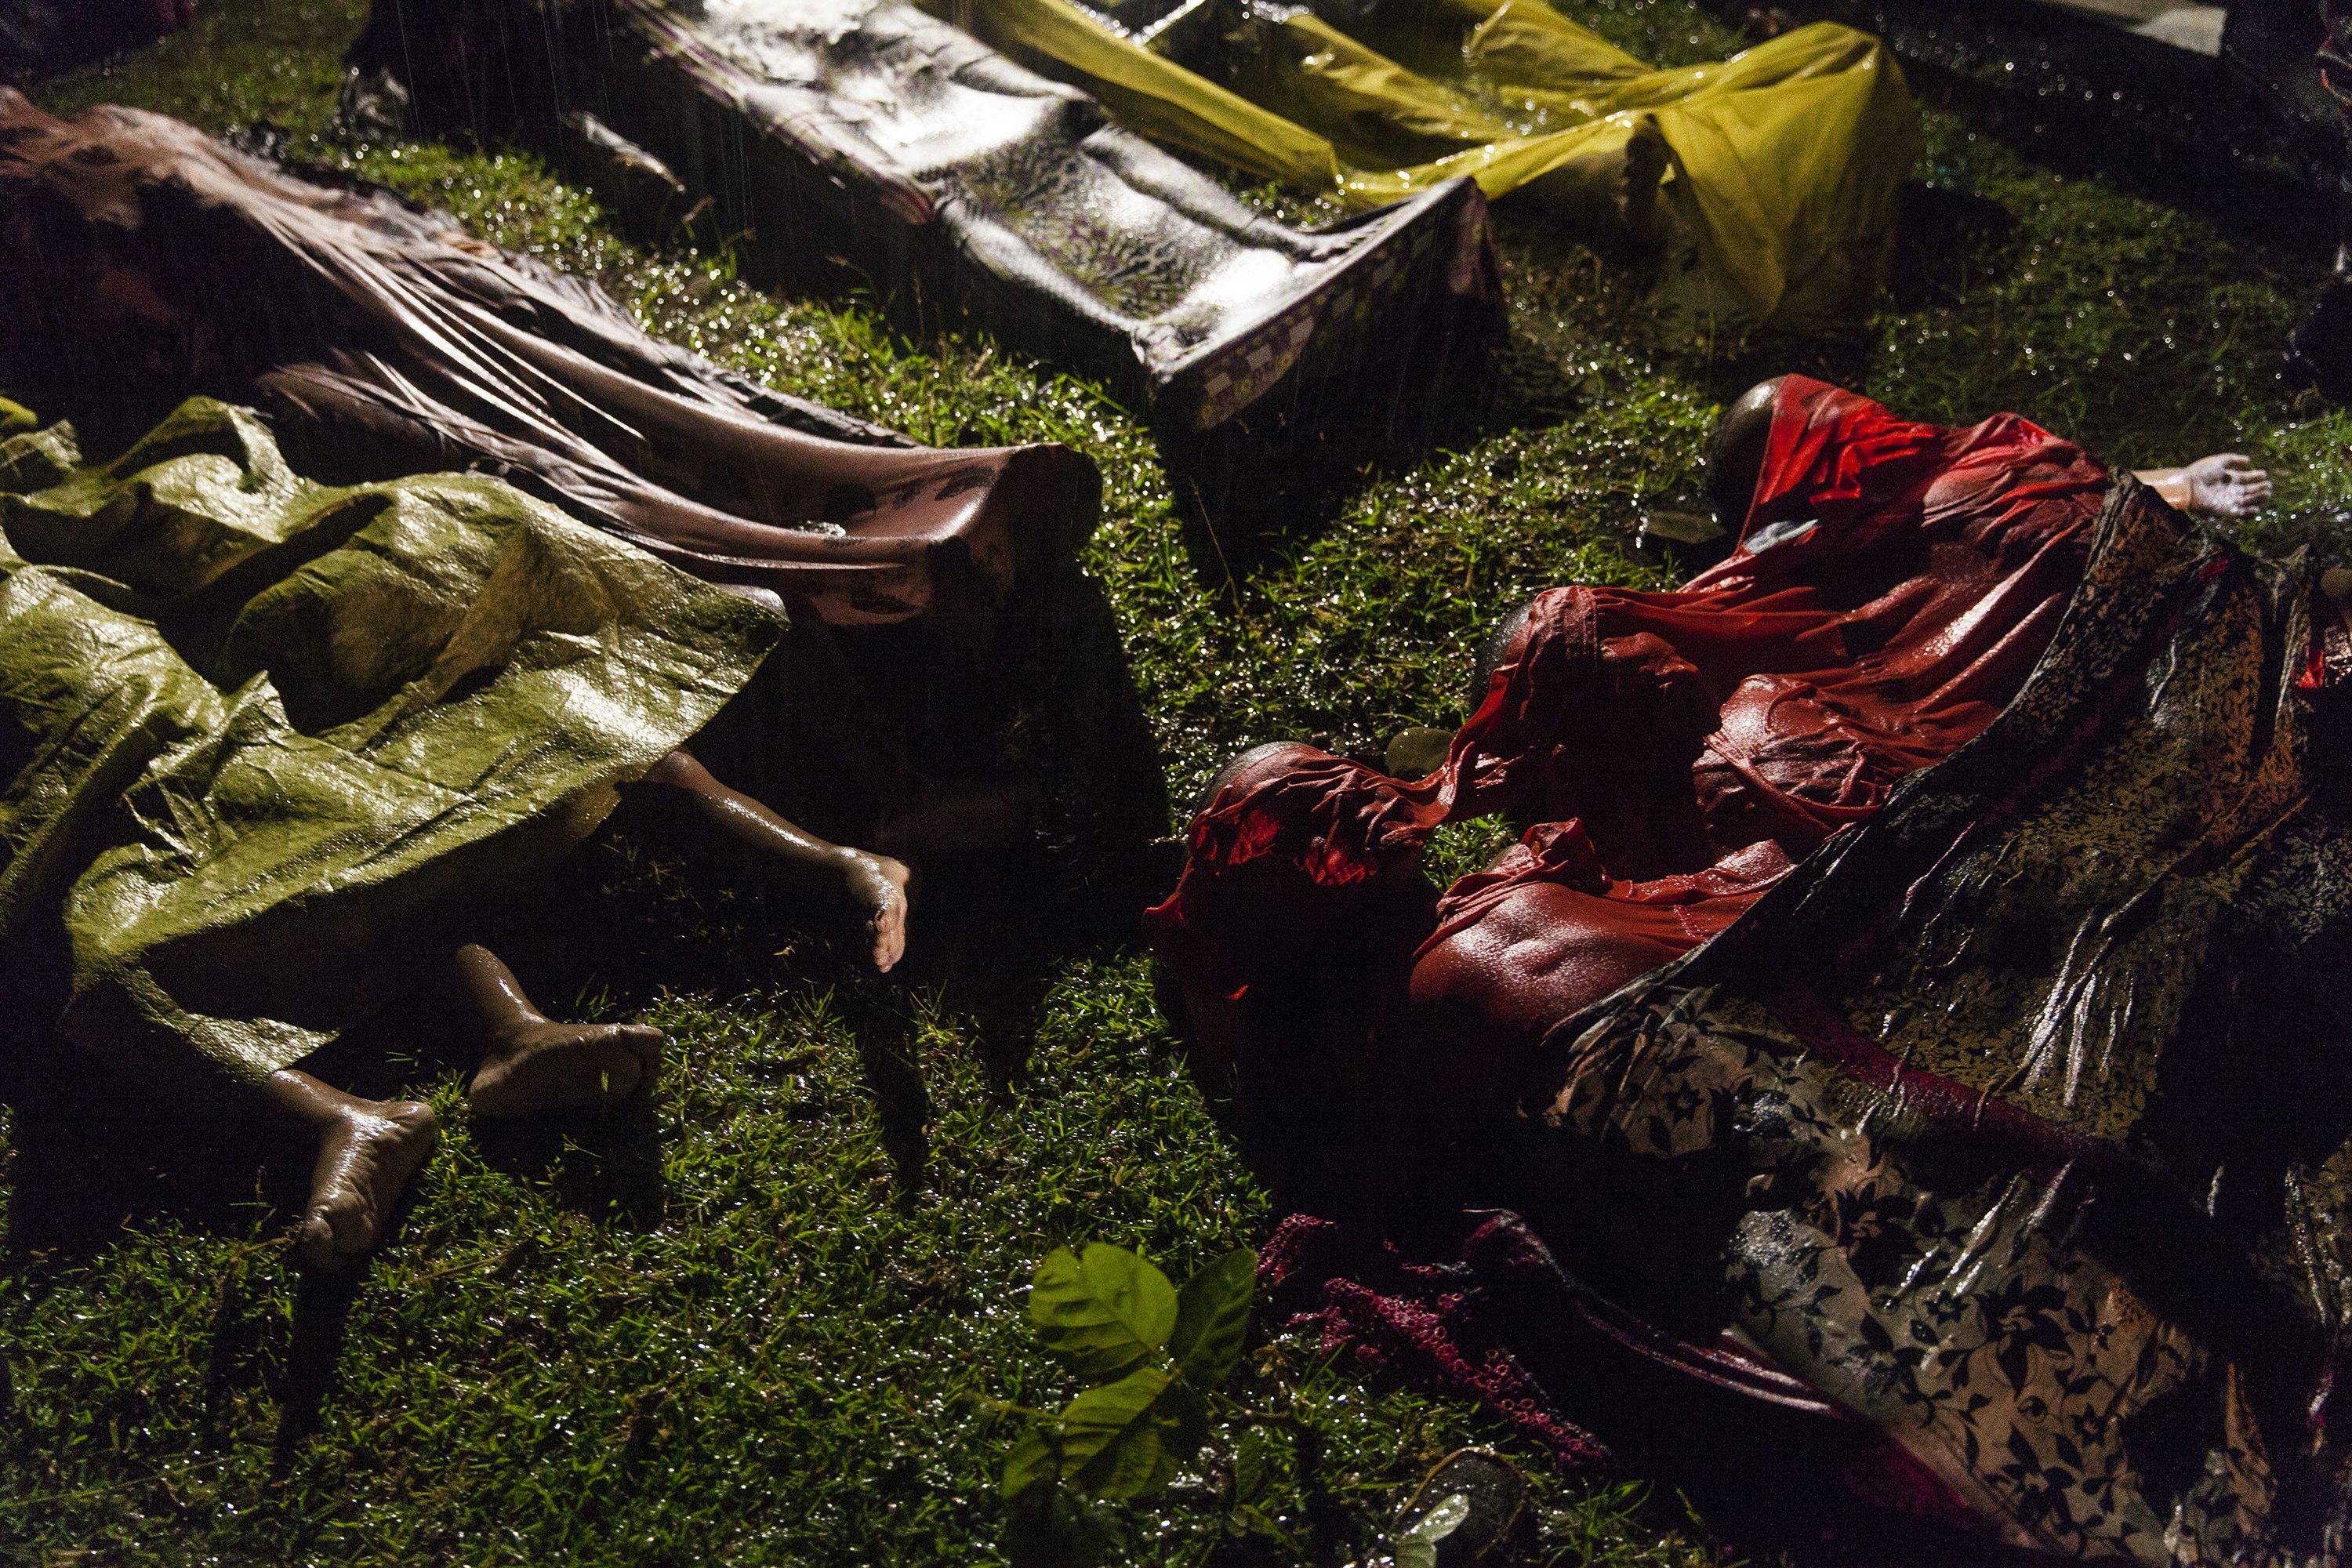 I corpi di un gruppo di profughi rohingya morti durante il naufragio in Bangladesh per fuggire dalla Birmania. Inani beach per Unicef (28 settembre 2017)